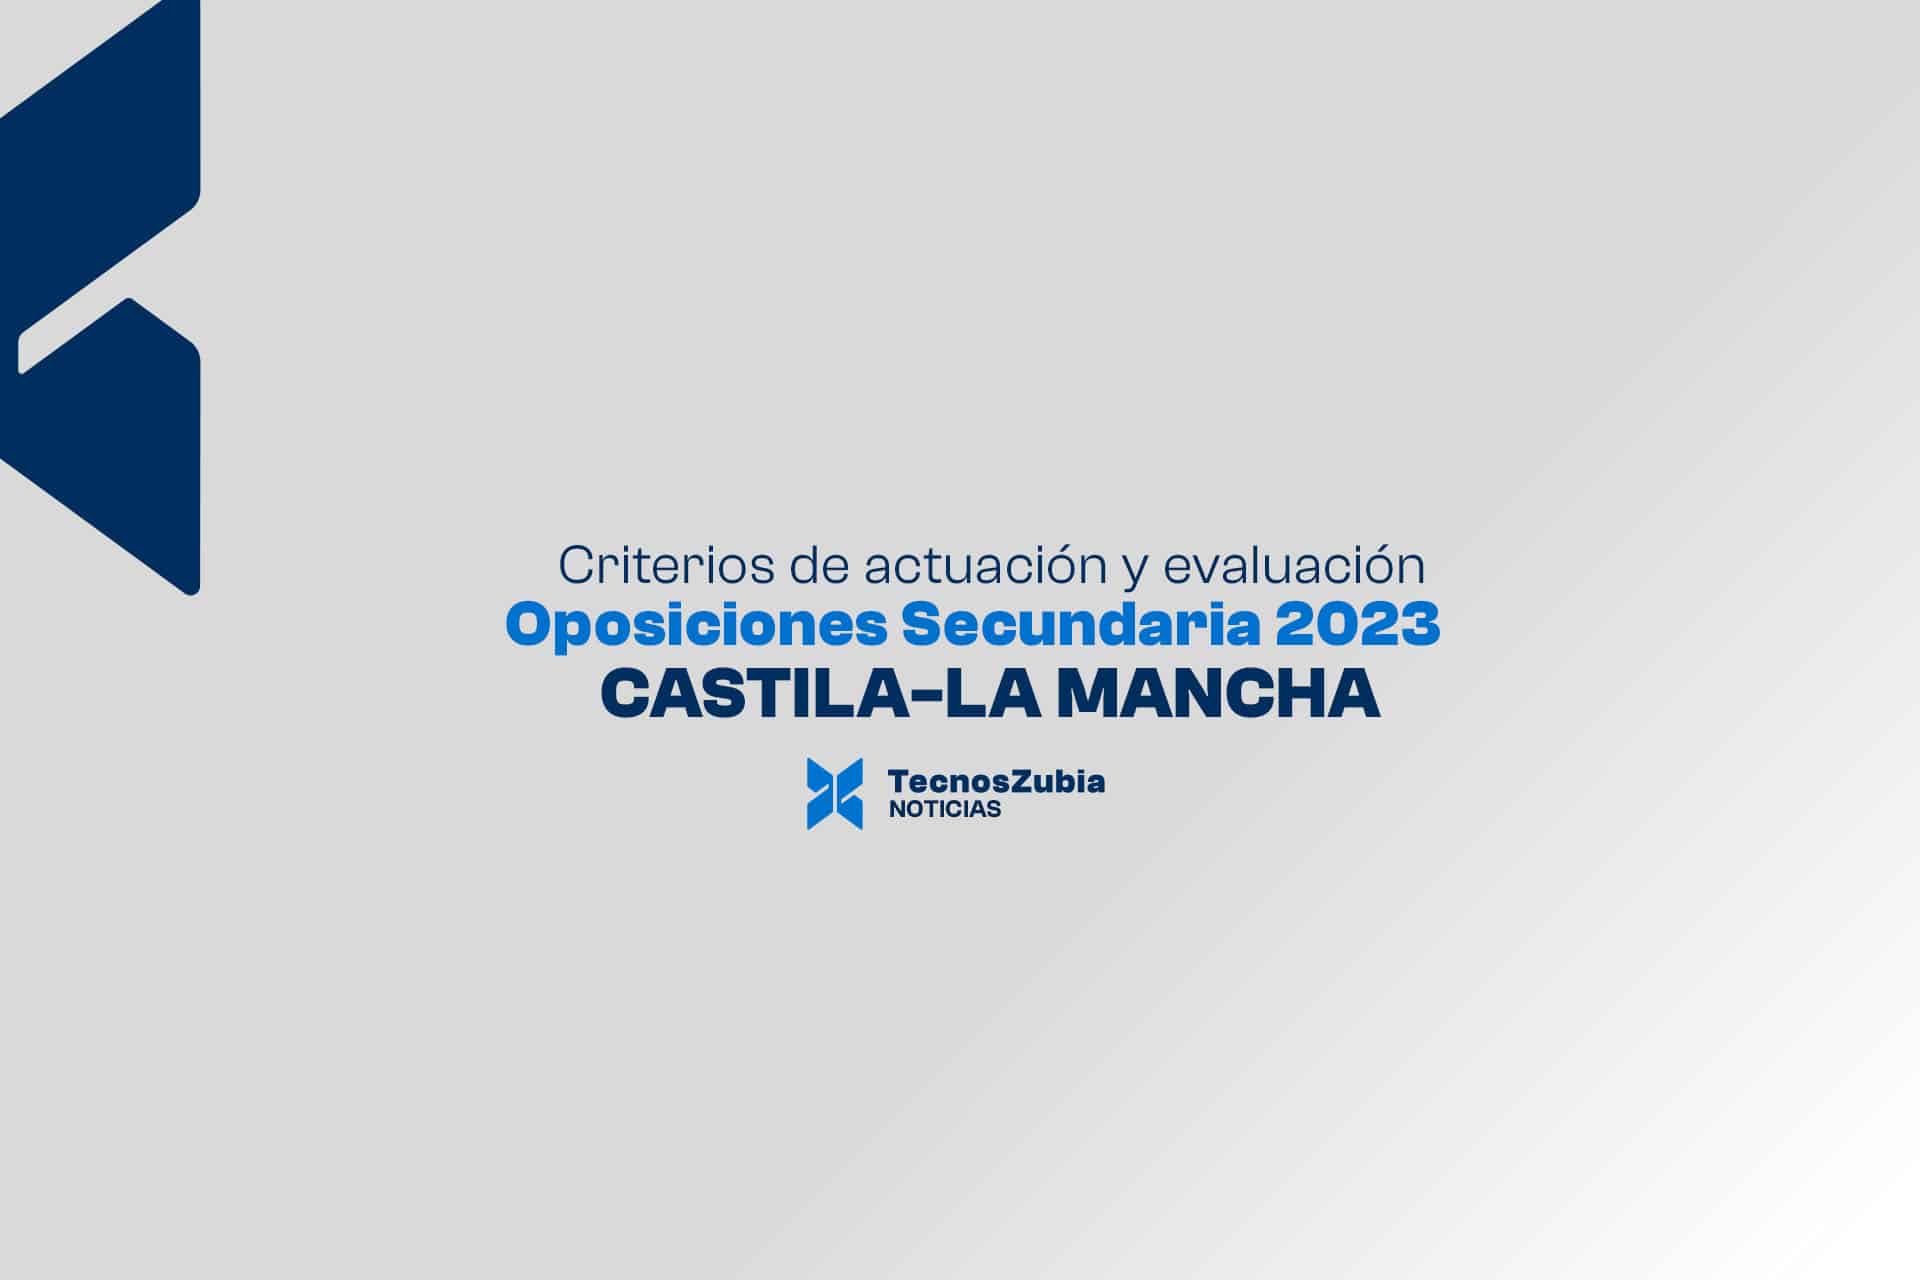 Criterios de actuación y evaluación. Oposiciones Secundaria 2023. Castilla-La Mancha.